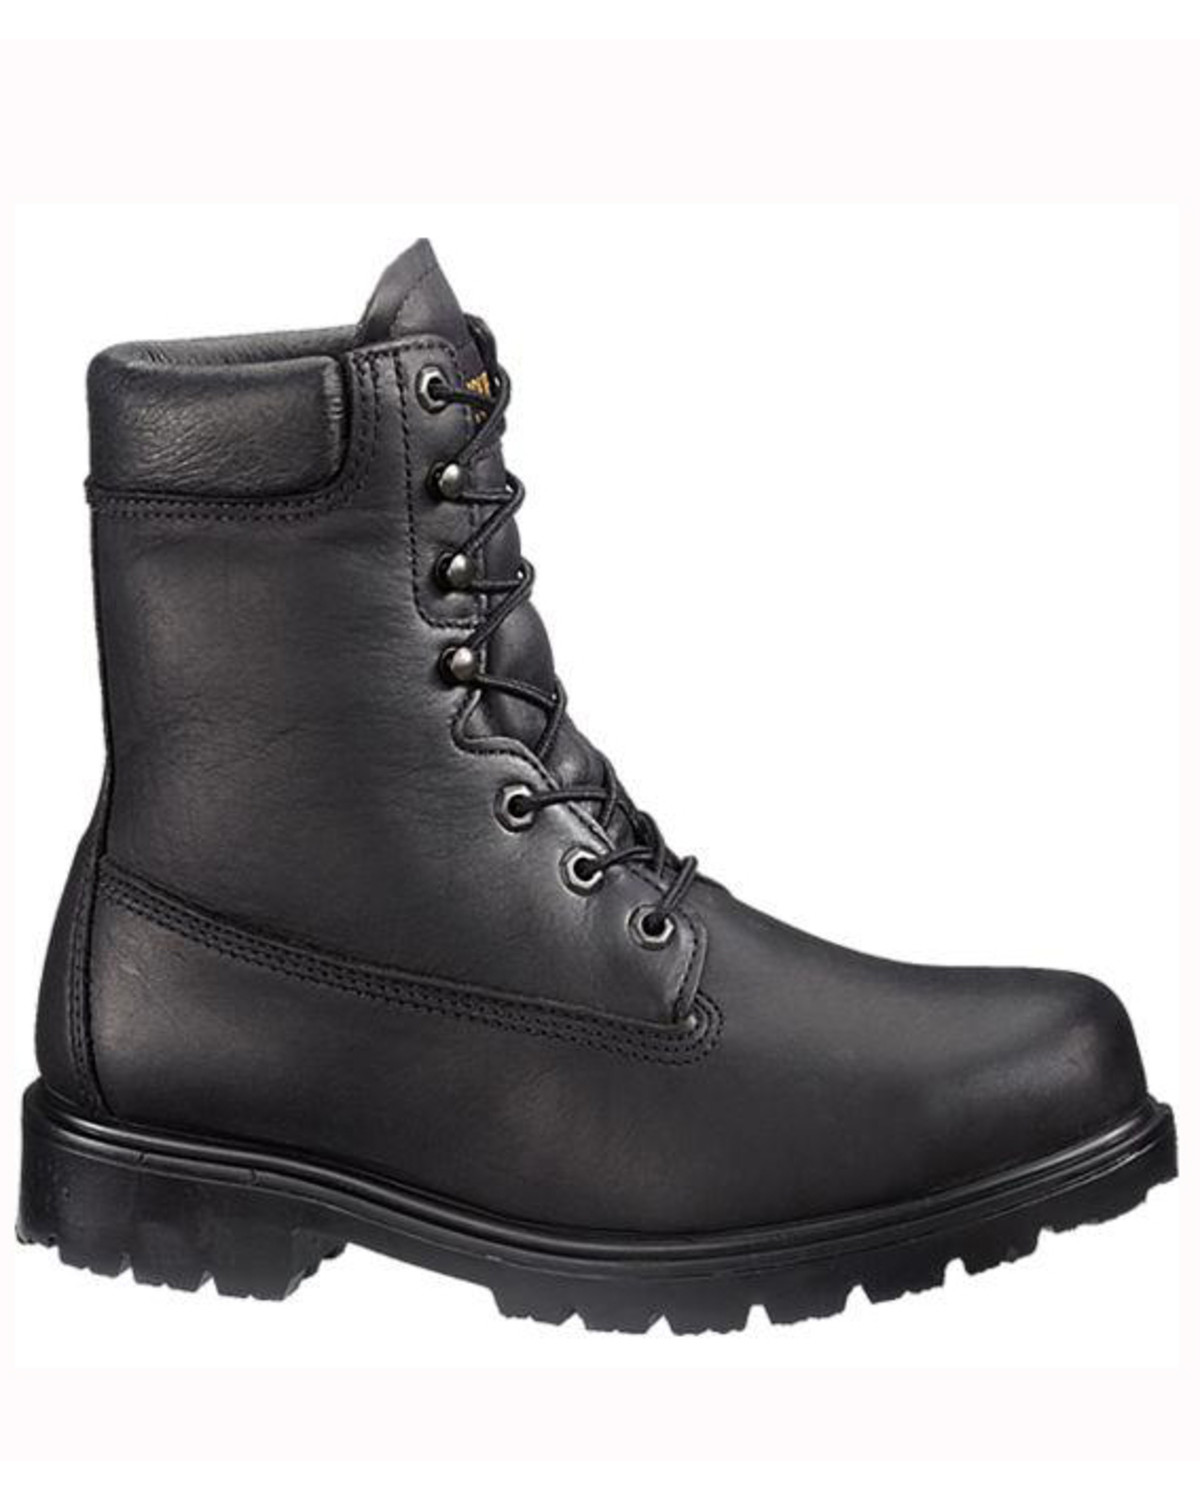 waterproof steel toe lace up boots